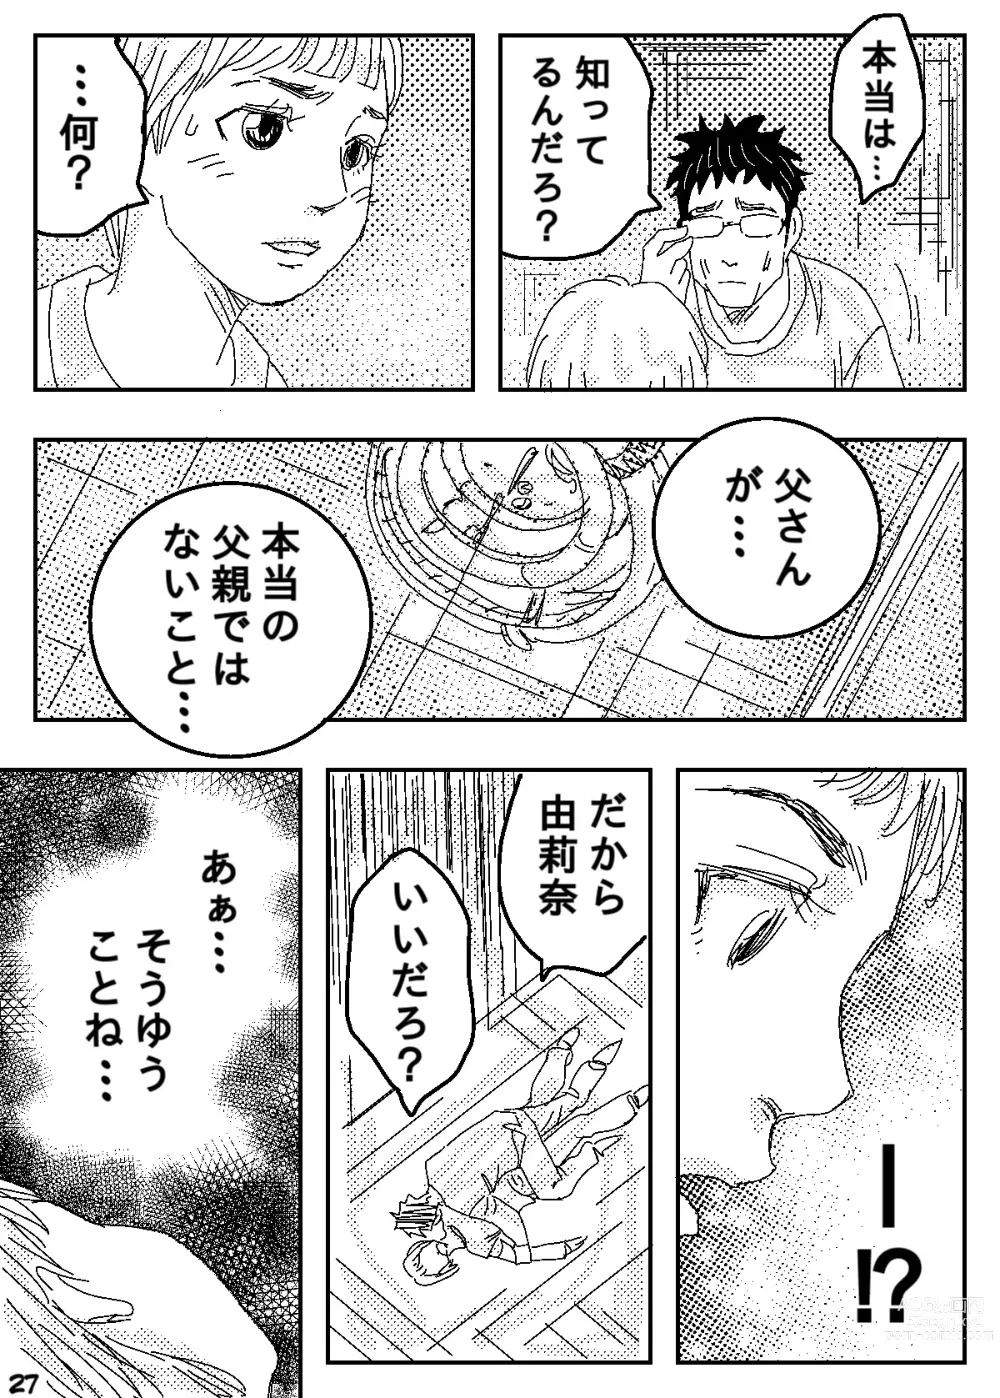 Page 27 of doujinshi Gesu no Kiwami Kazoku